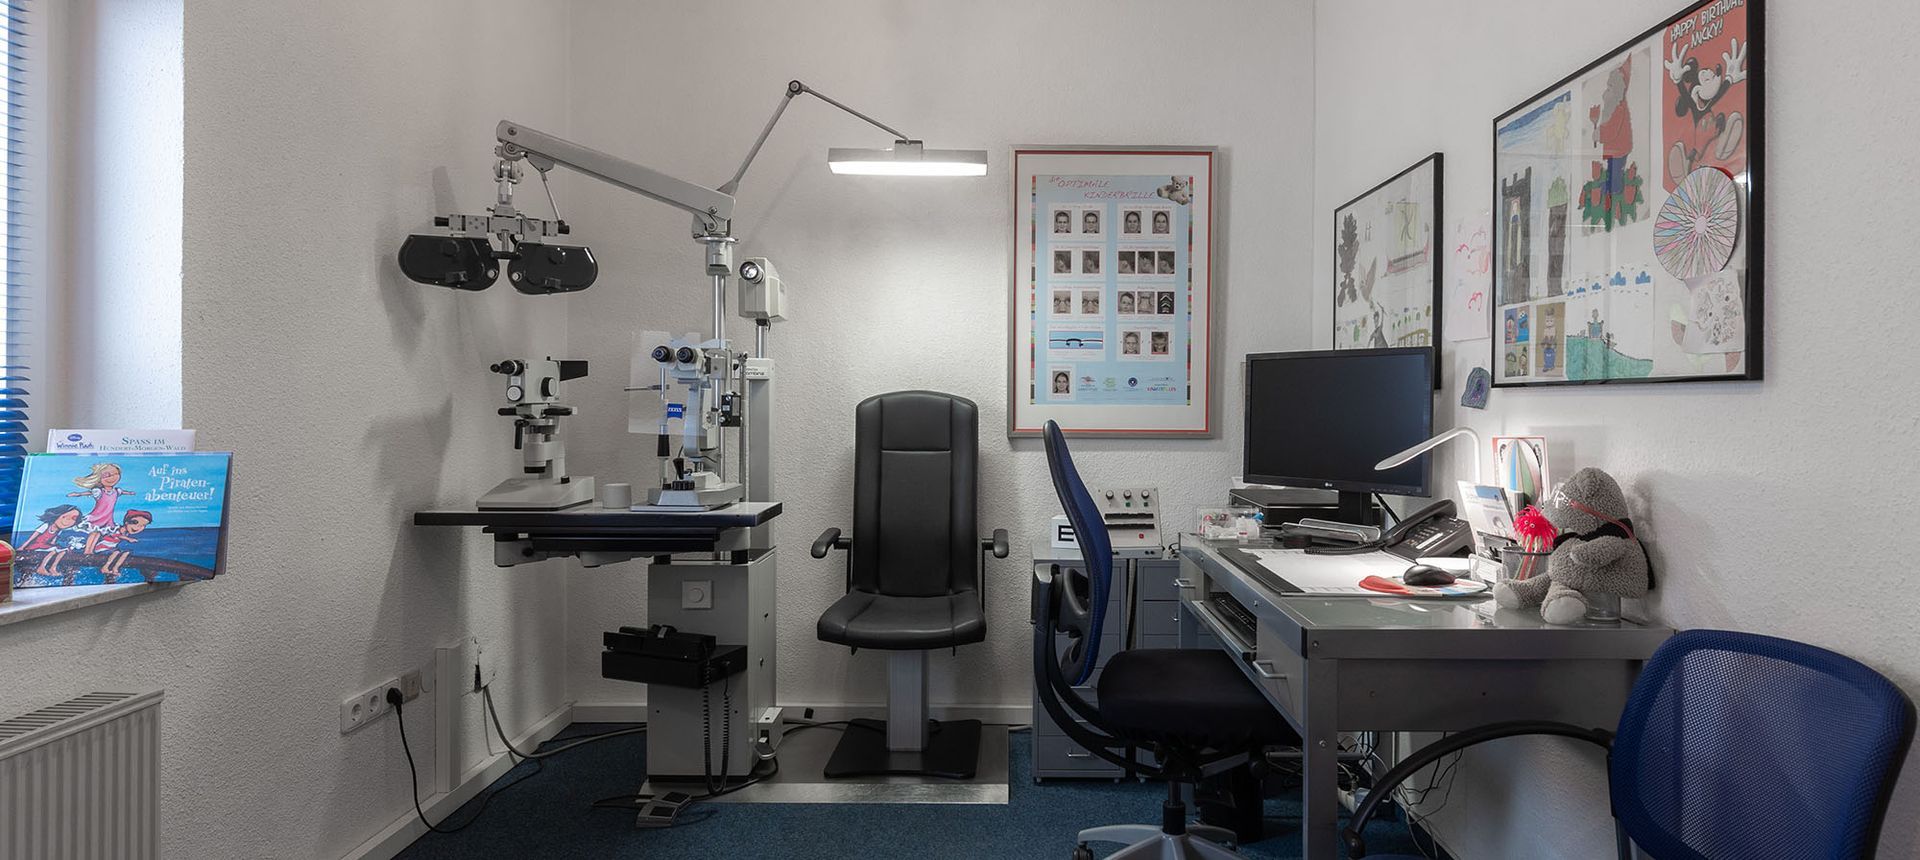 Eine Augenarztpraxis mit Stuhl, Schreibtisch und Computer.